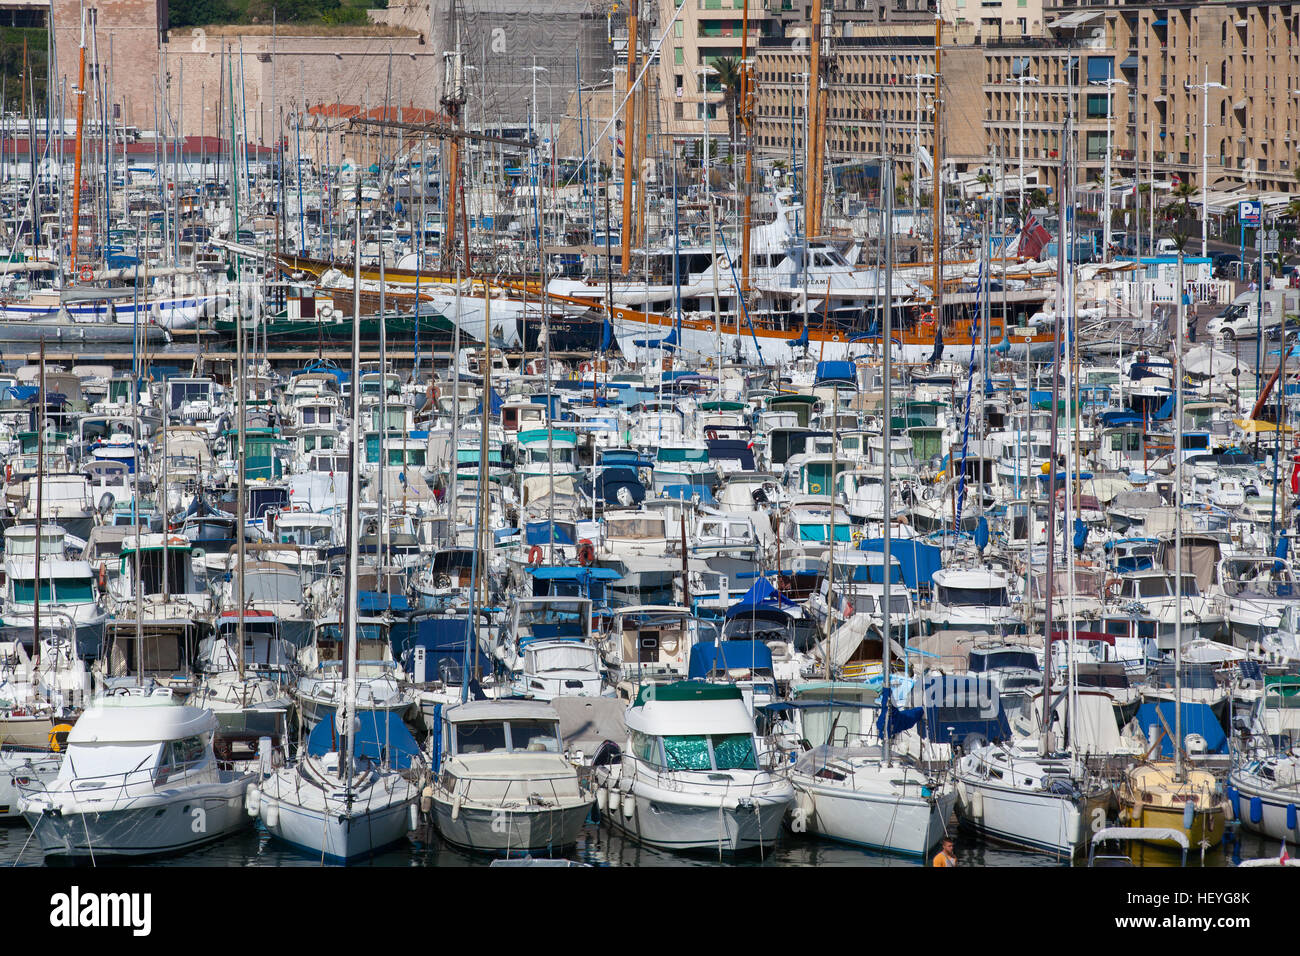 Marseille,France - Mai 8,2011 : Vieux port plein de bateaux et yachts.Il a été la rade de Marseille depuis l'antiquité et est maintenant le principal popula Banque D'Images